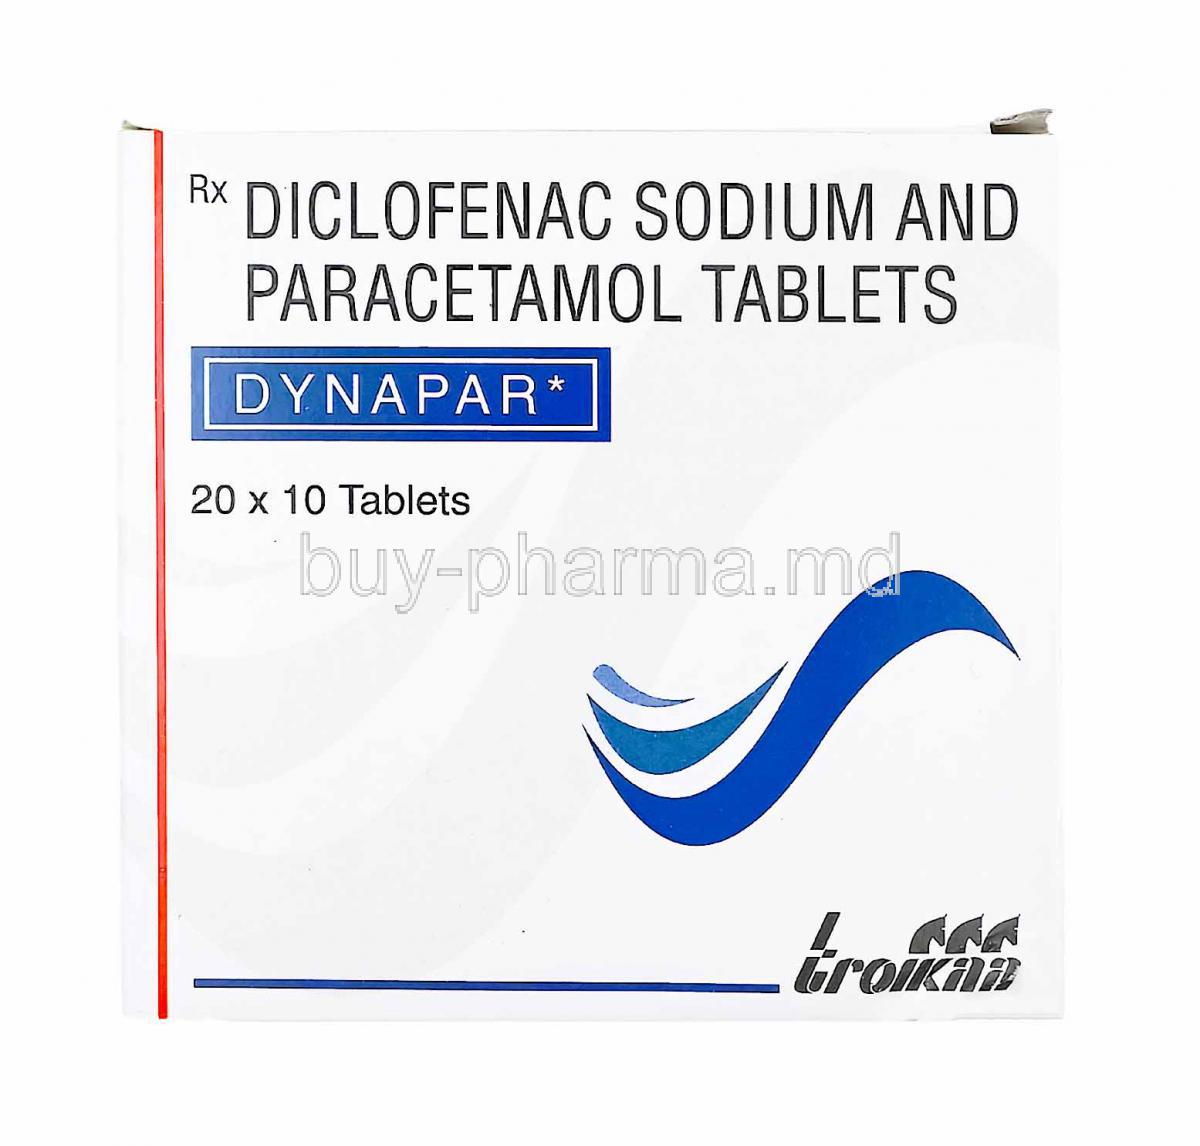 Dynapar, Diclofenac and Paracetamol